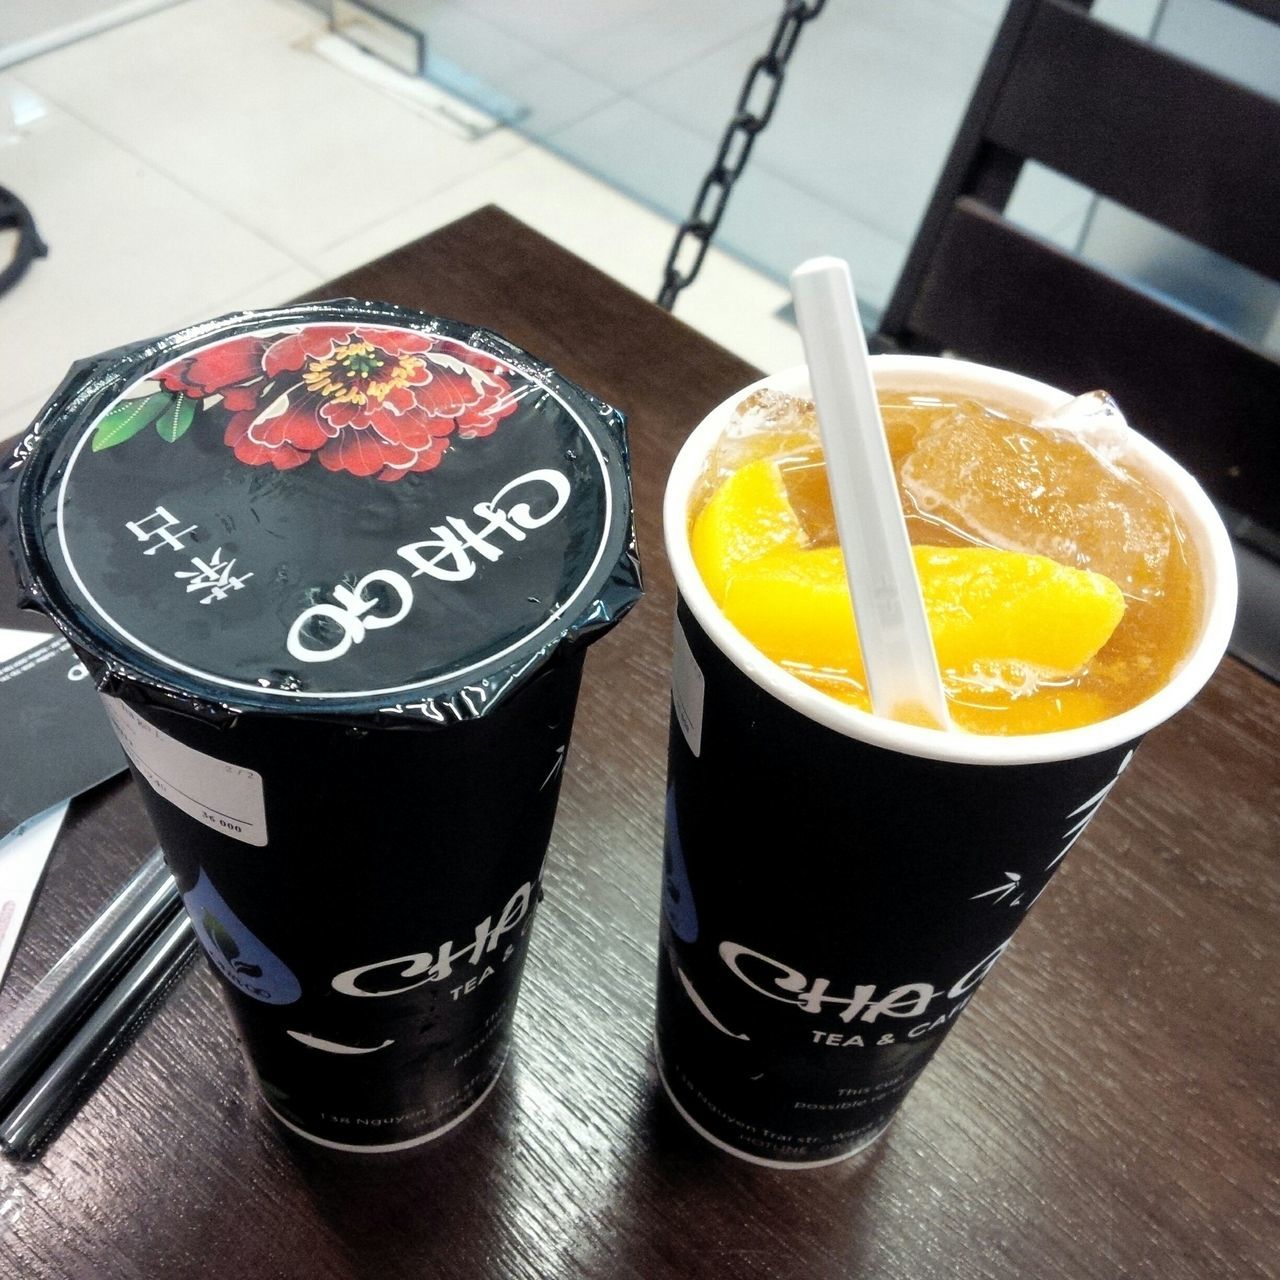 Cha Go Tea & Cafe